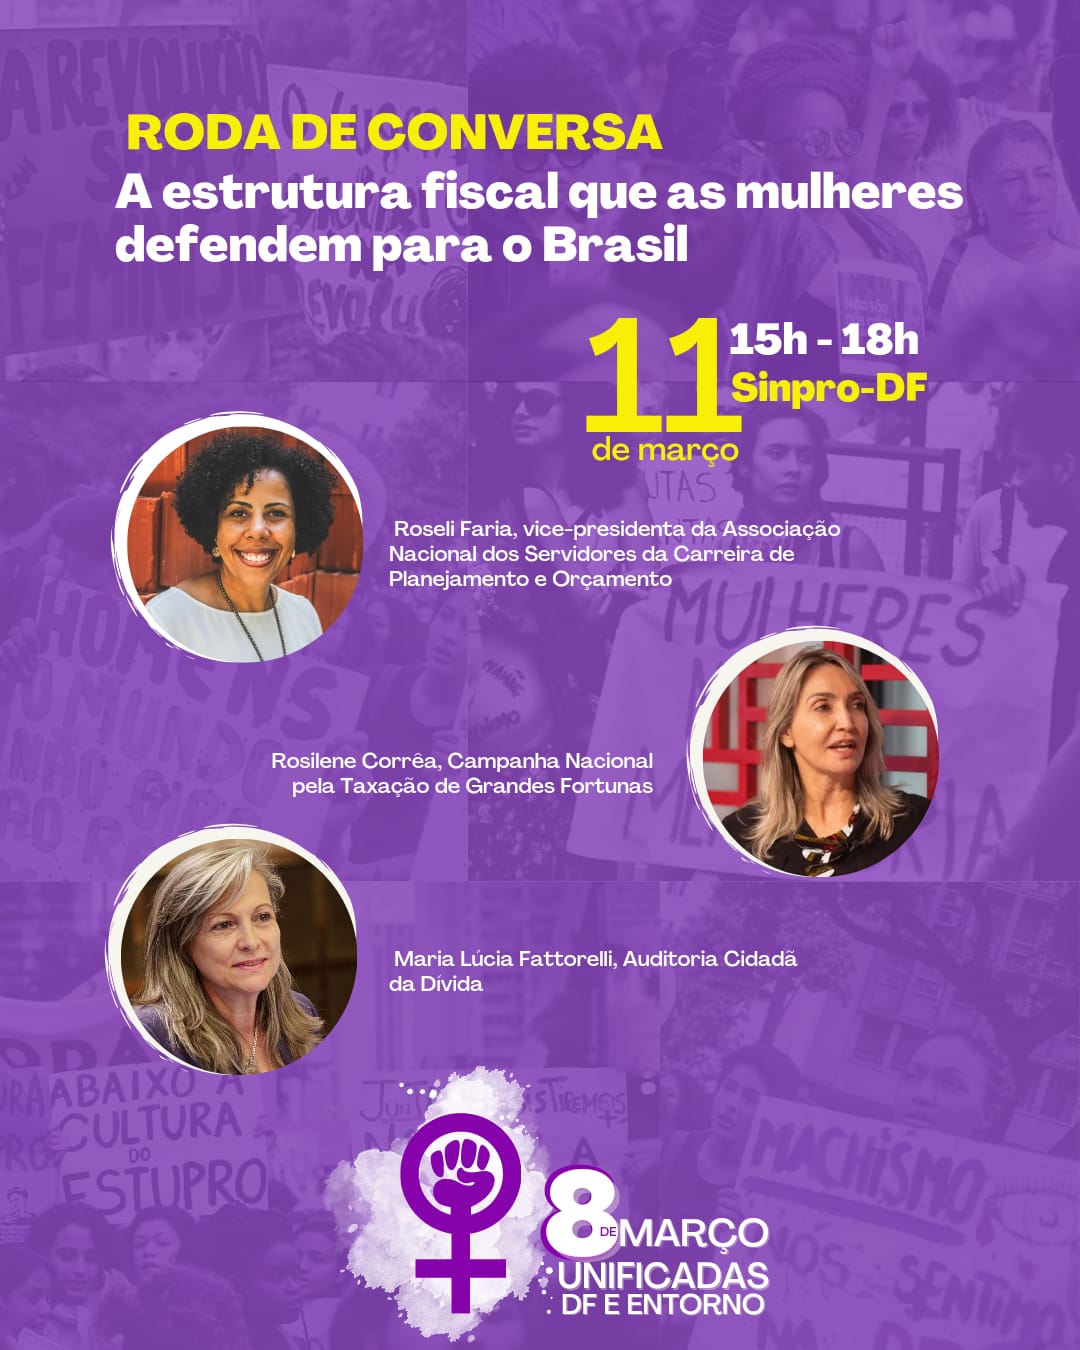 Estrutura fiscal que as mulheres defendem para o Brasil